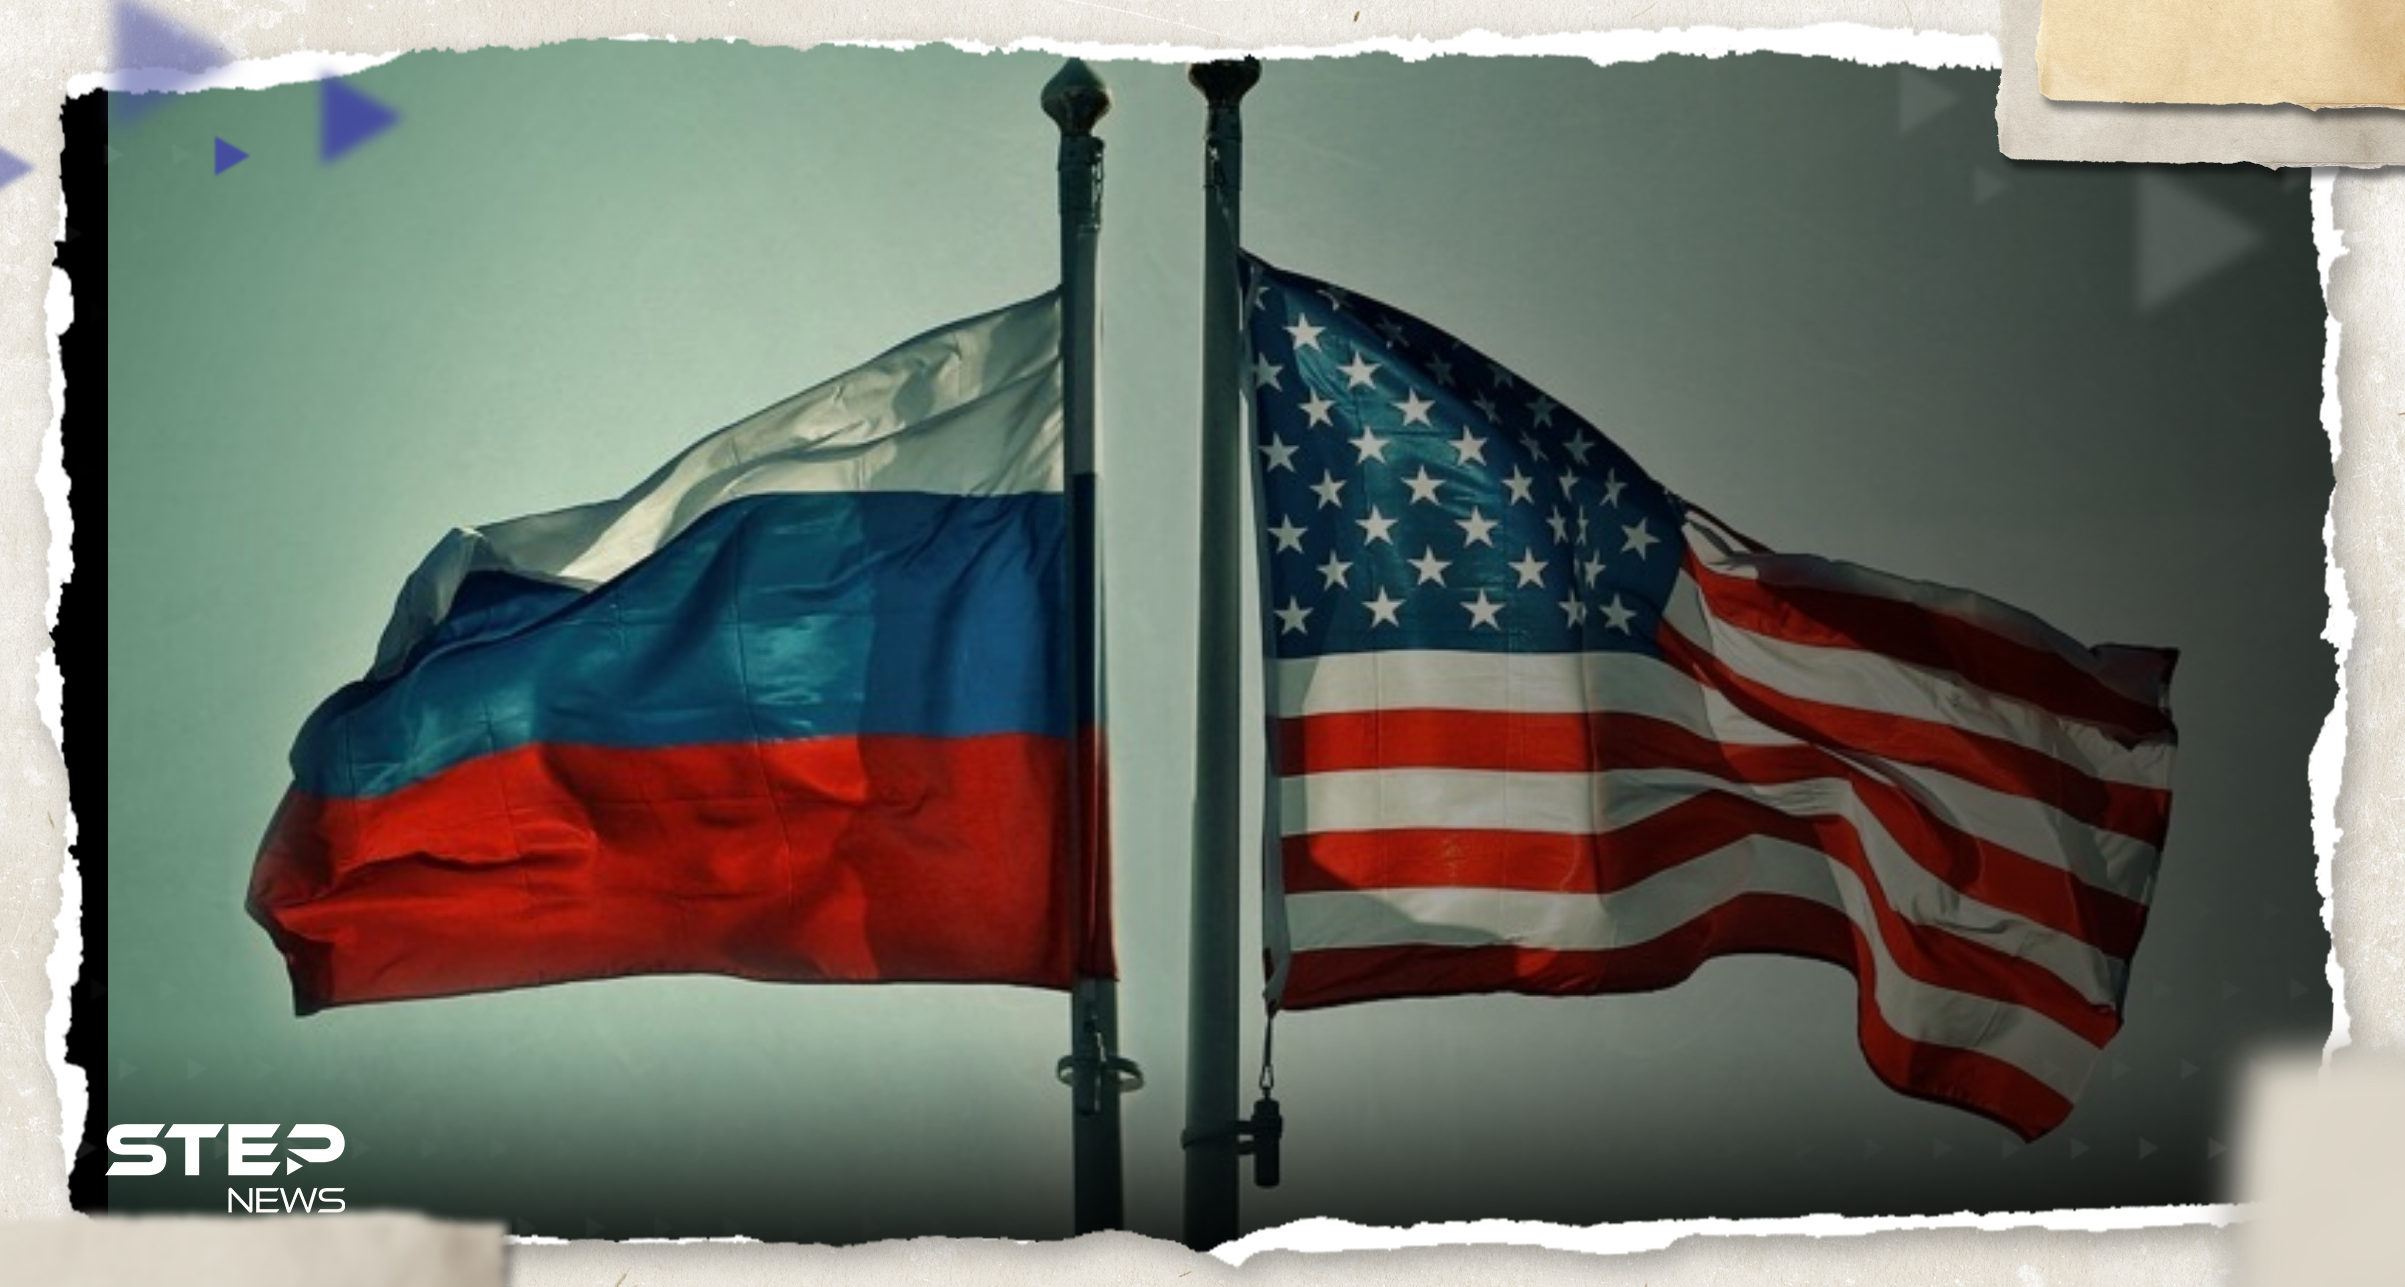 "العالم على شفا حرب".. مسؤول روسي من قلب واشنطن يتحدث عن تحركات تغضب موسكو 